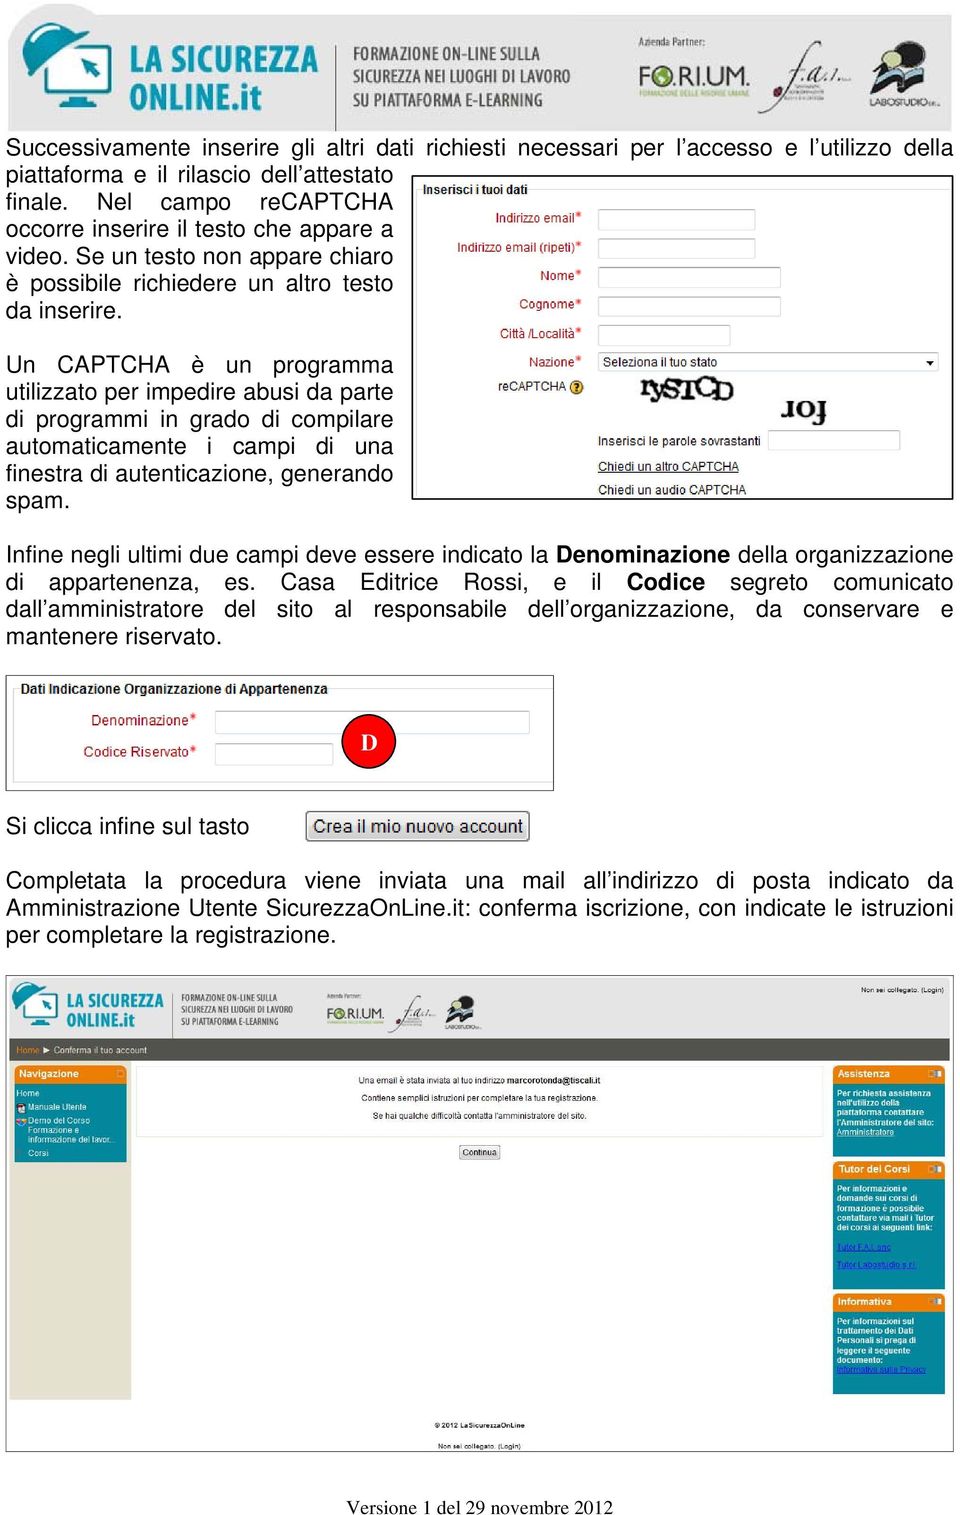 Un CAPTCHA è un programma utilizzato per impedire abusi da parte di programmi in grado di compilare automaticamente i campi di una finestra di autenticazione, generando spam.